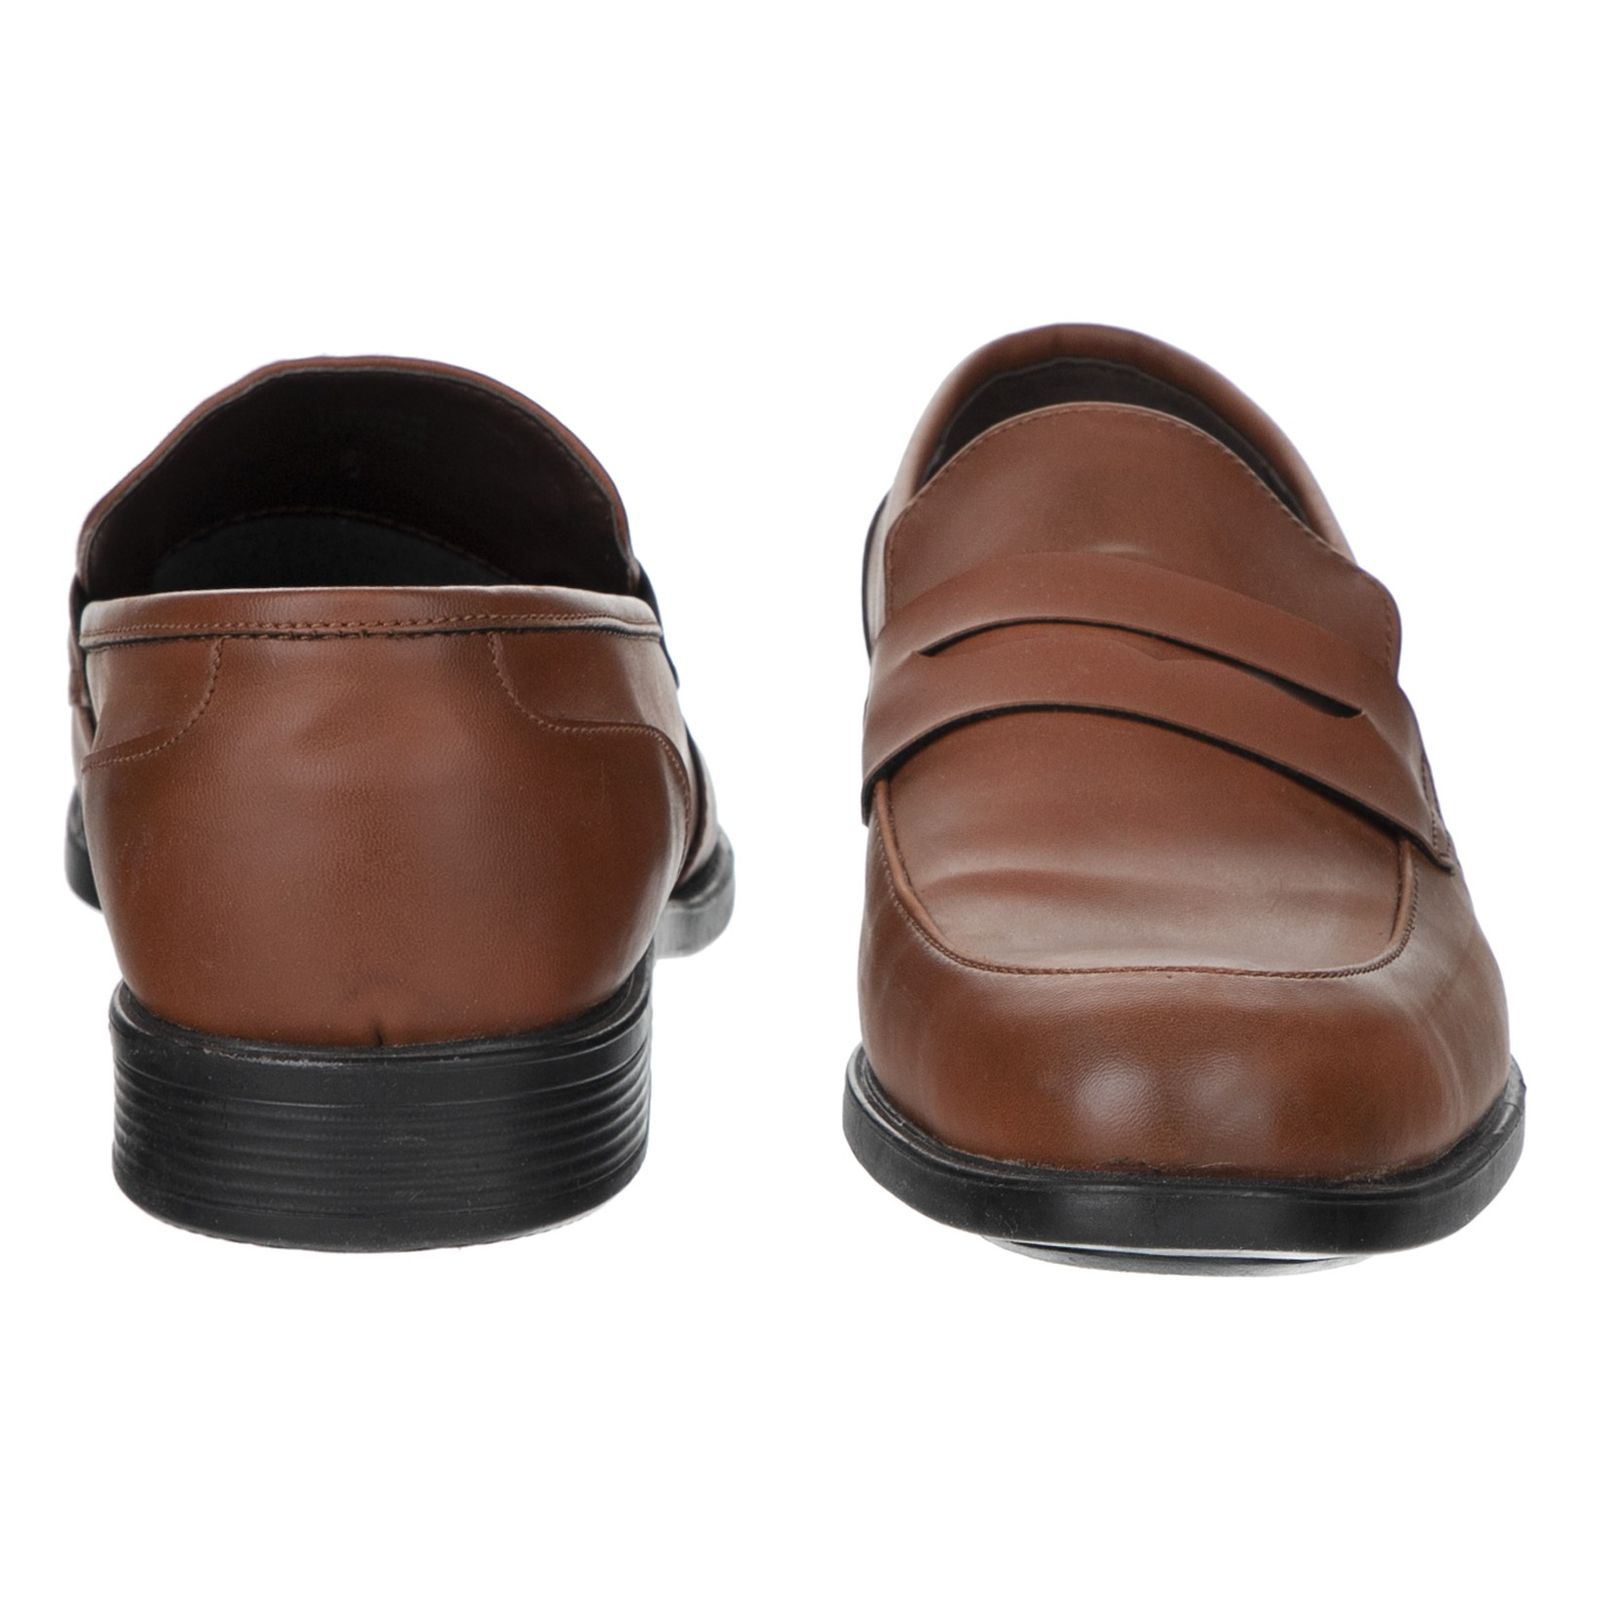 کفش مردانه پولاریس مدل 100243628-122 - قهوه ای - 4